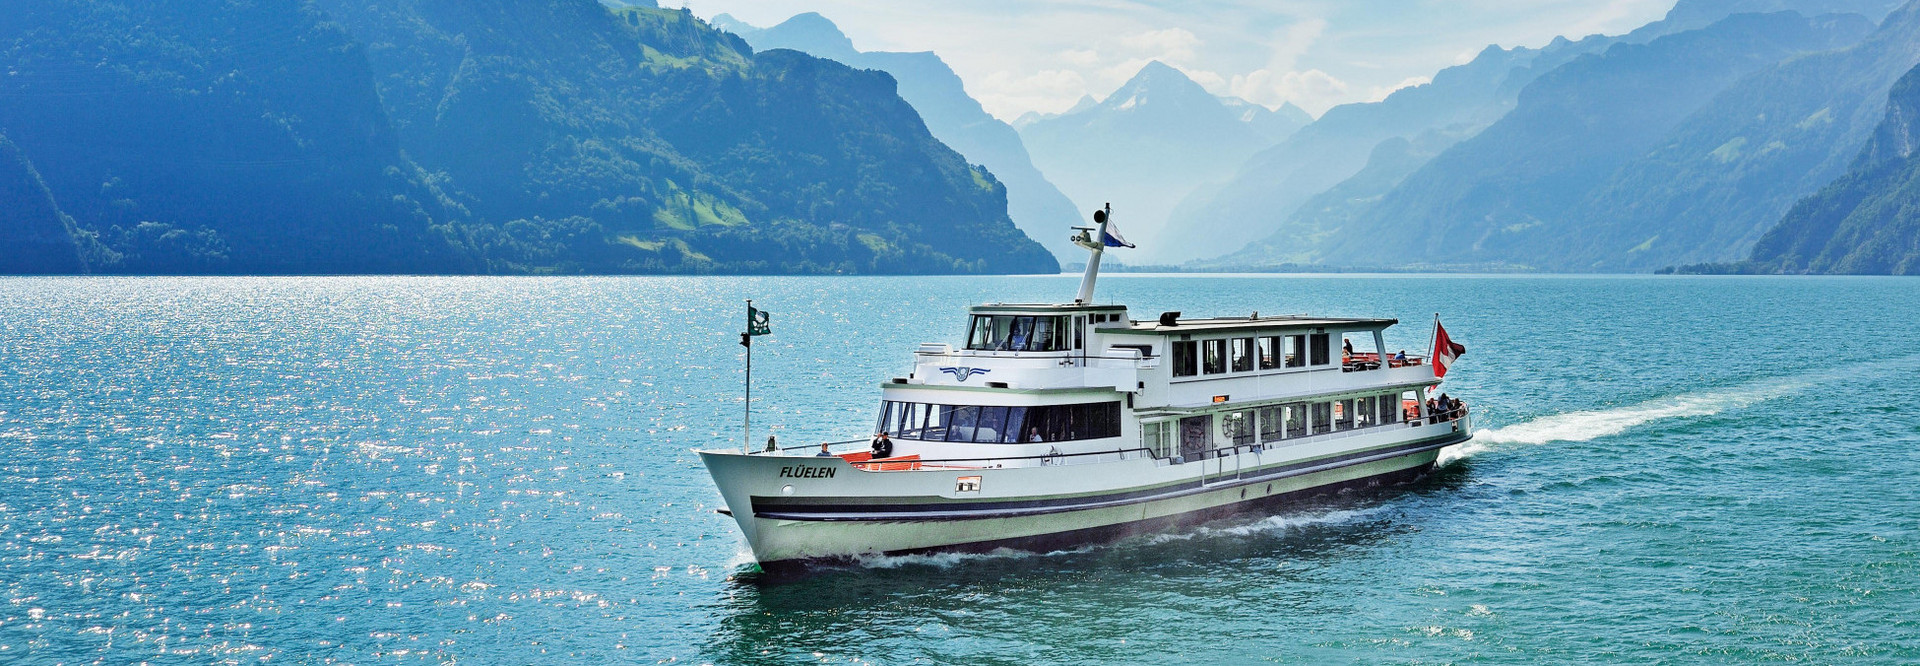 Le bateau à moteur Flüelen navigue d'Uri à Lucerne par une belle journée d'été.